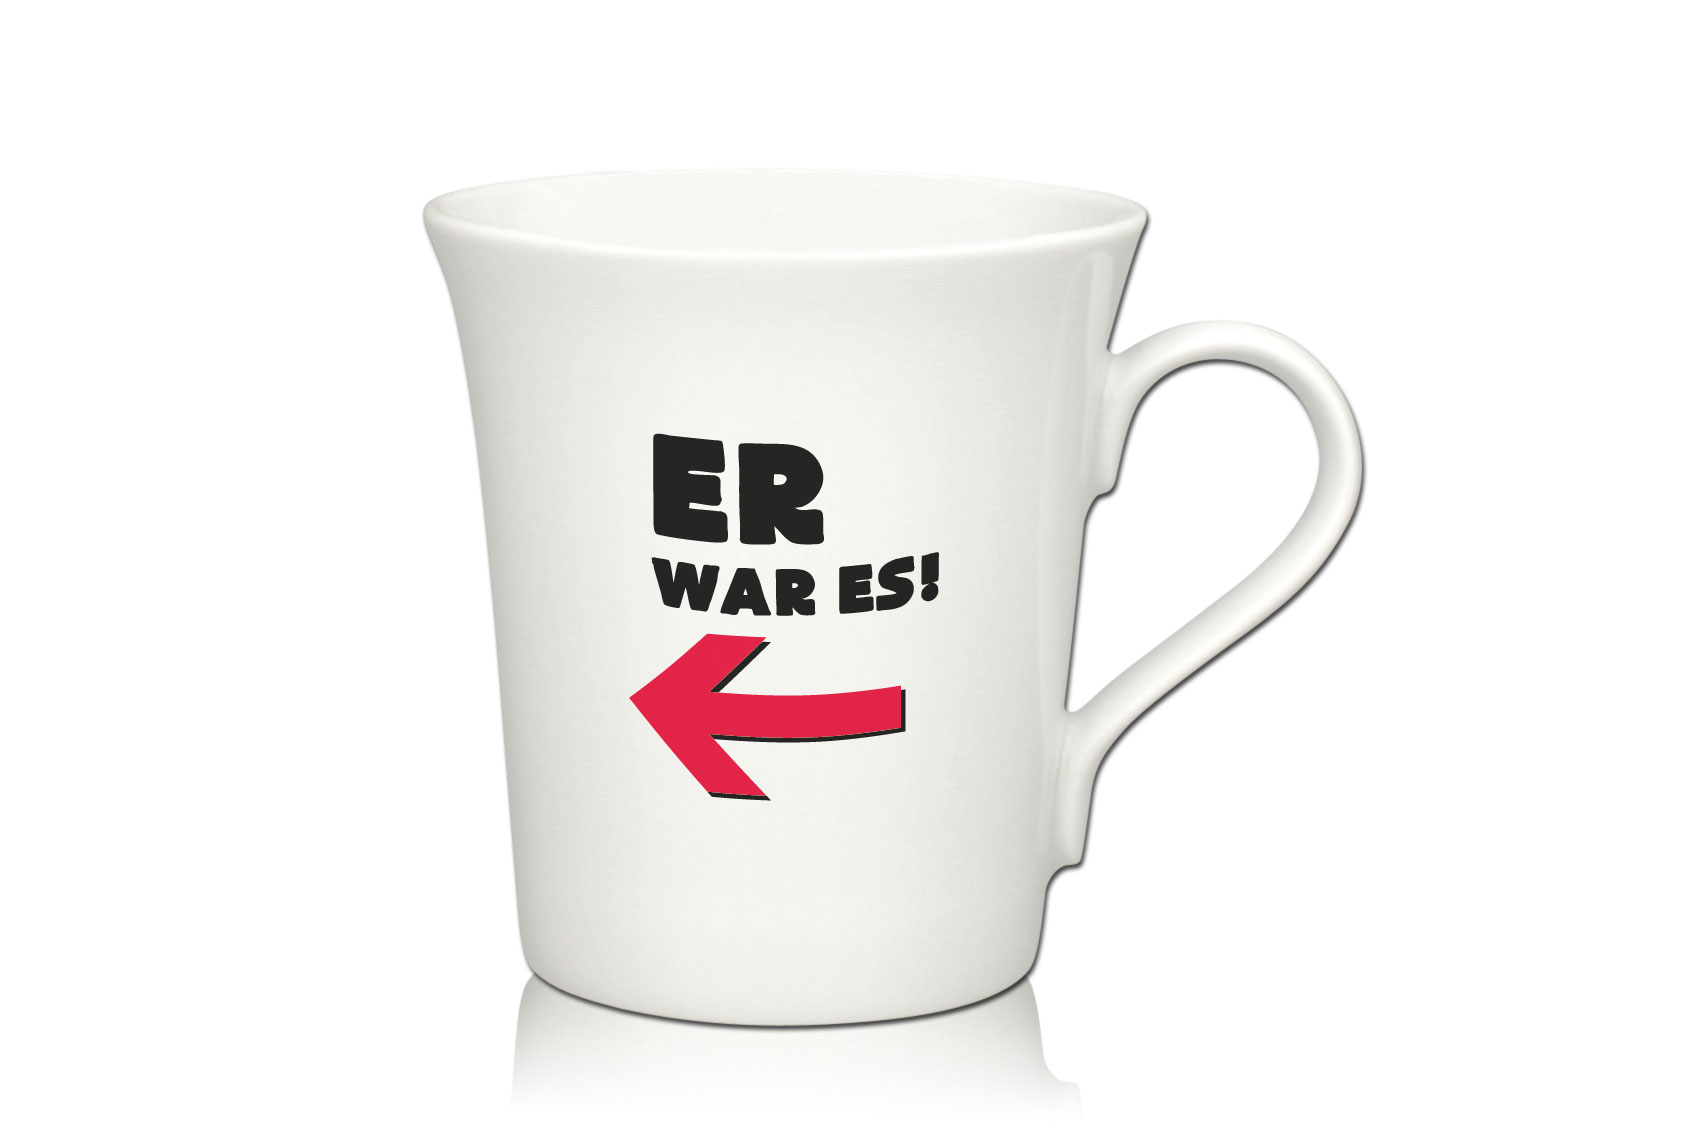 Lustige Porzellantasse Kaffeetasse Emilia weiss 34cl - Dekor: ER war es! von PorcelainSite GmbH